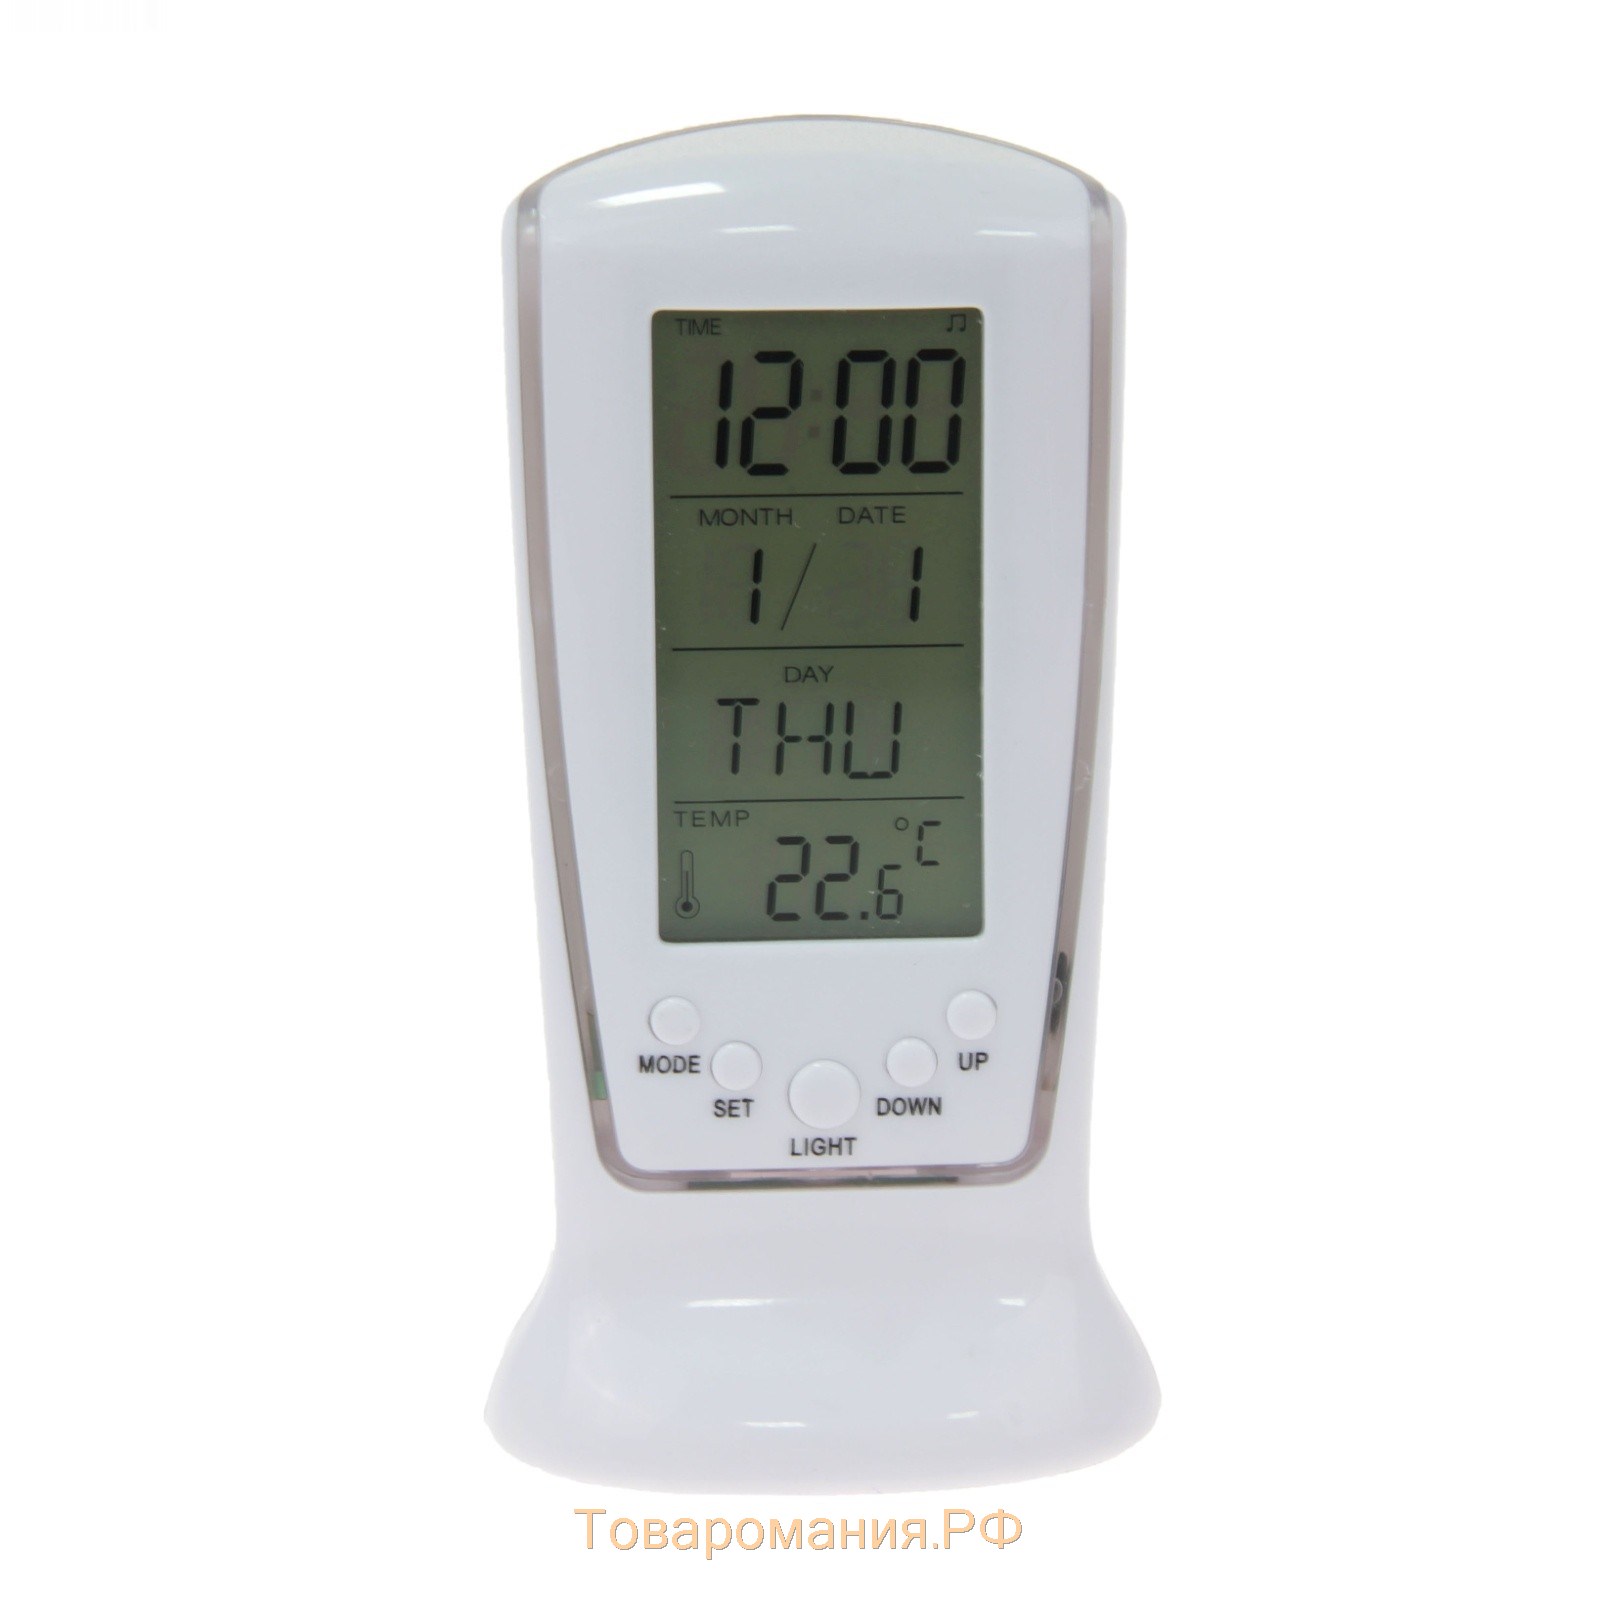 Будильник LB-02 "Обелиск", часы, дата, температура, подсветка, белый